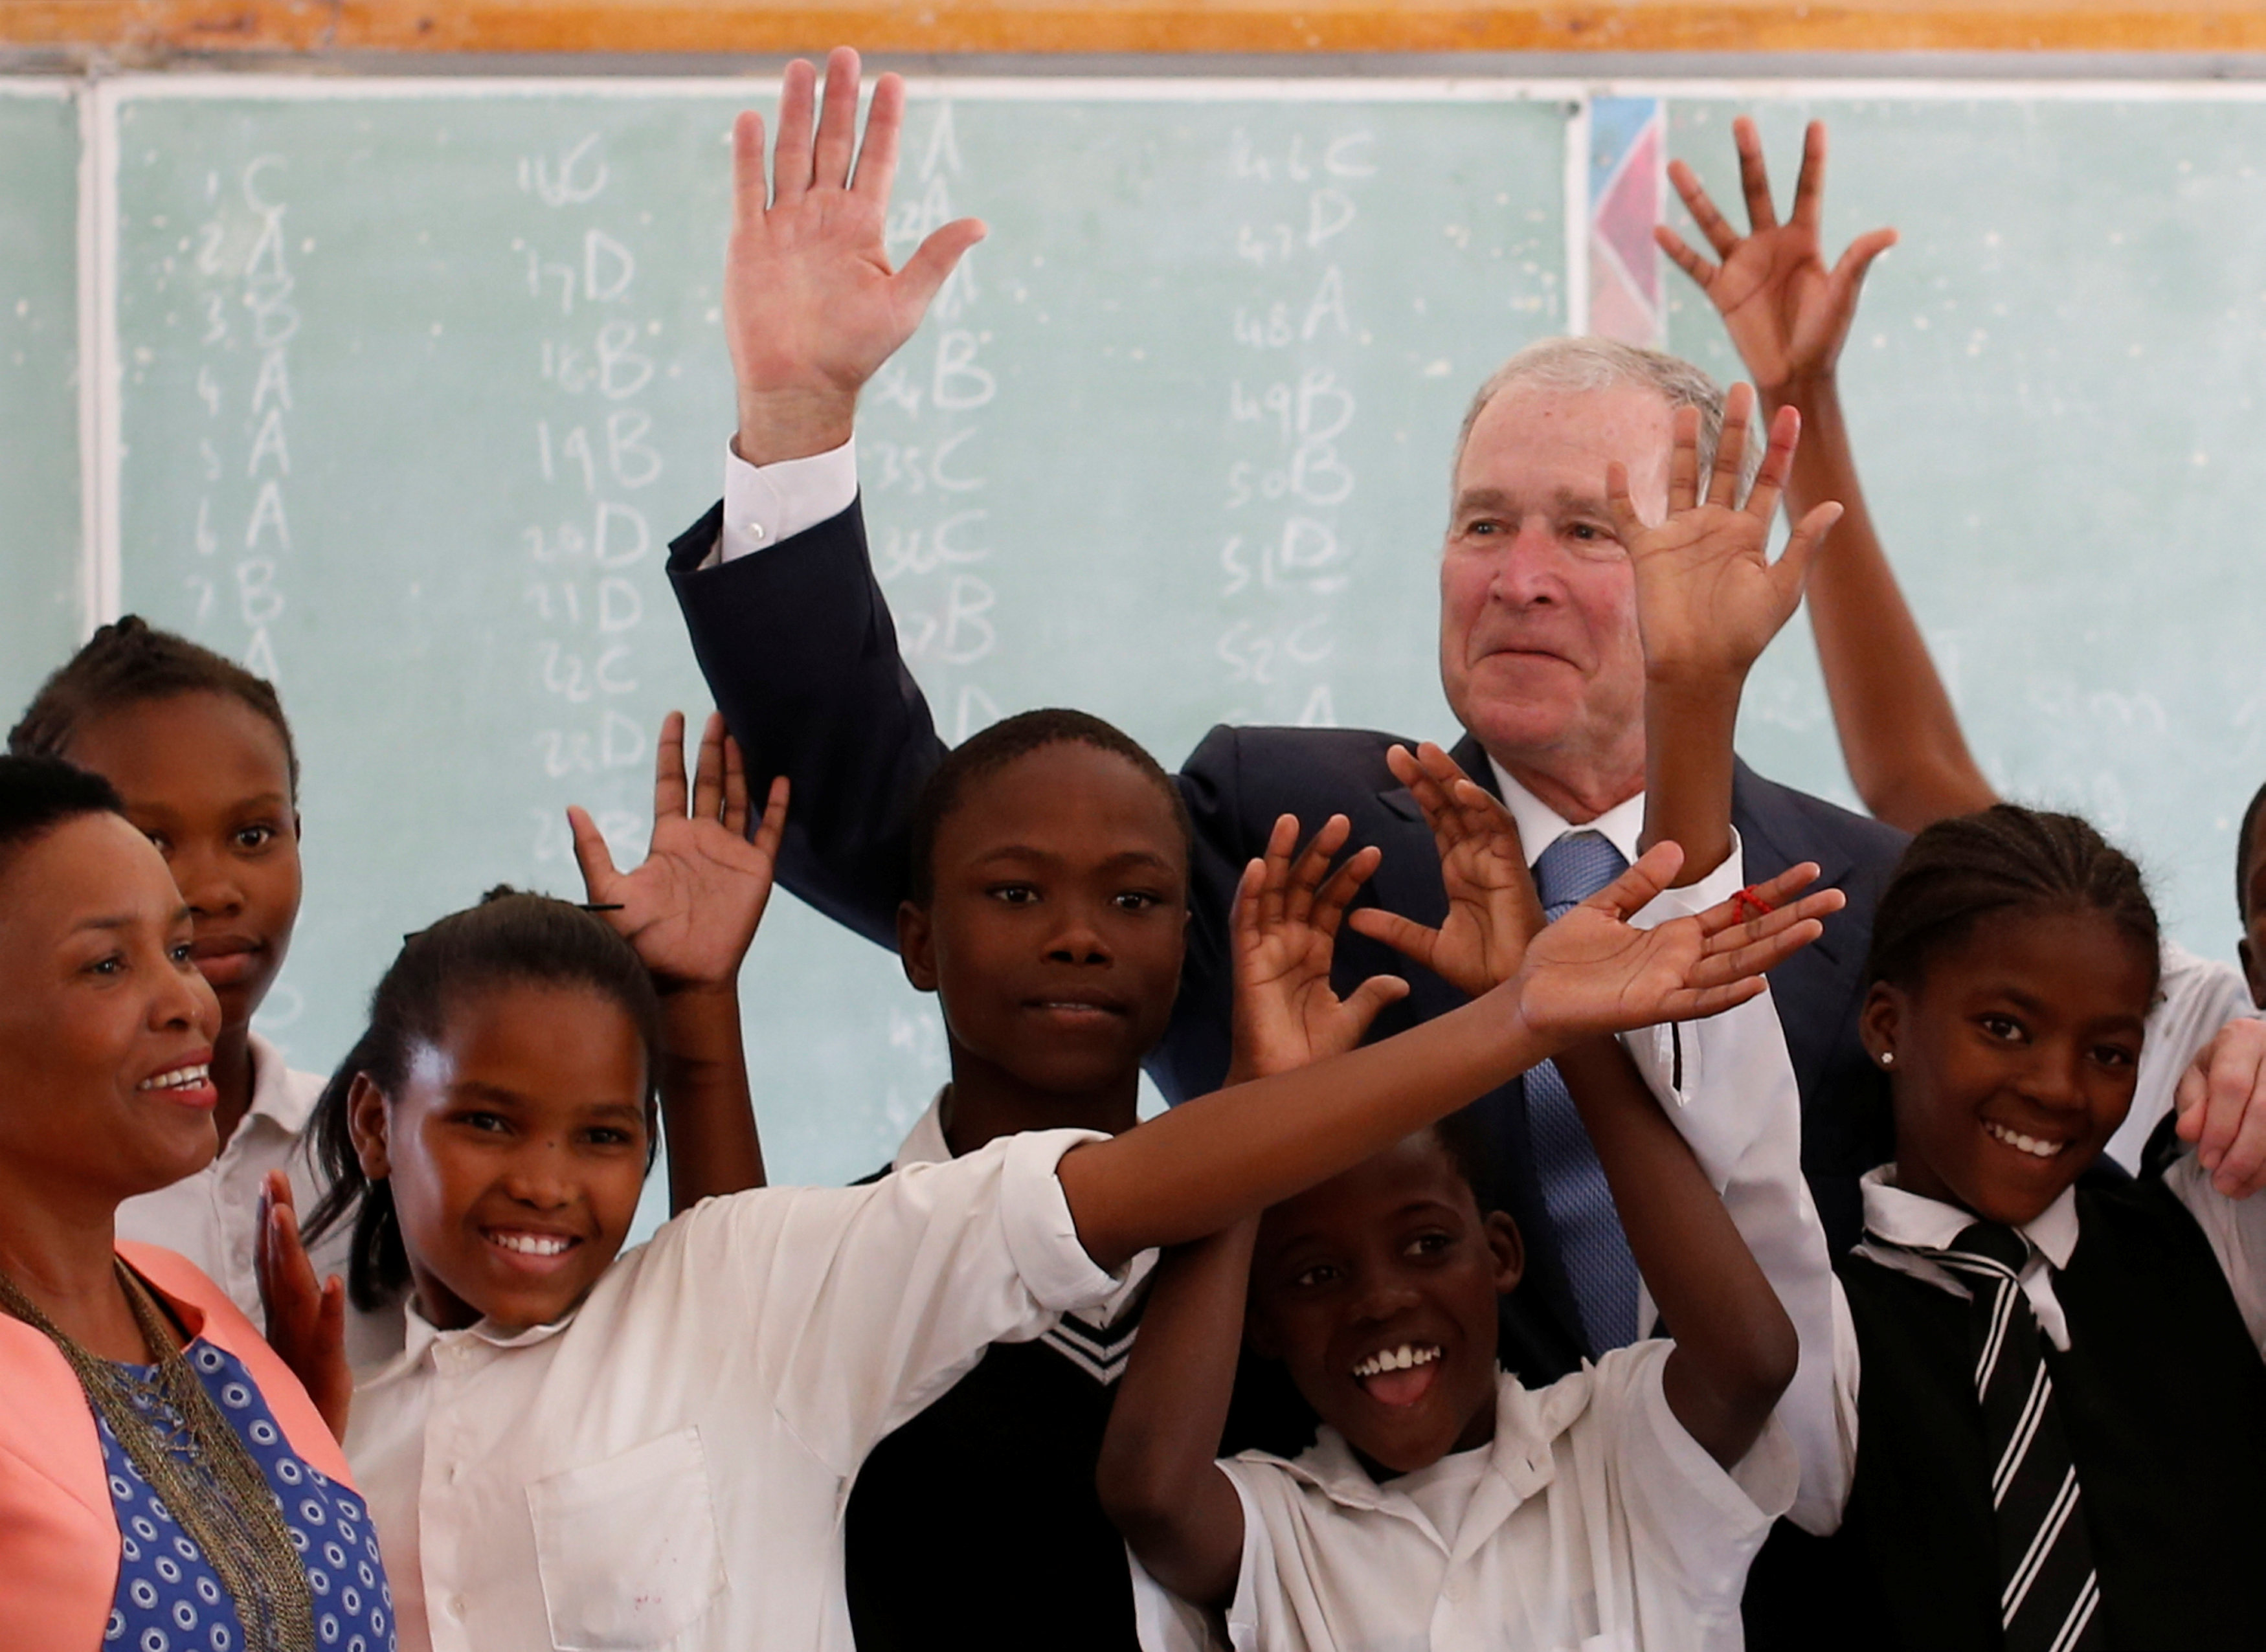 جورج بوش يرفع يده مع الأطفال